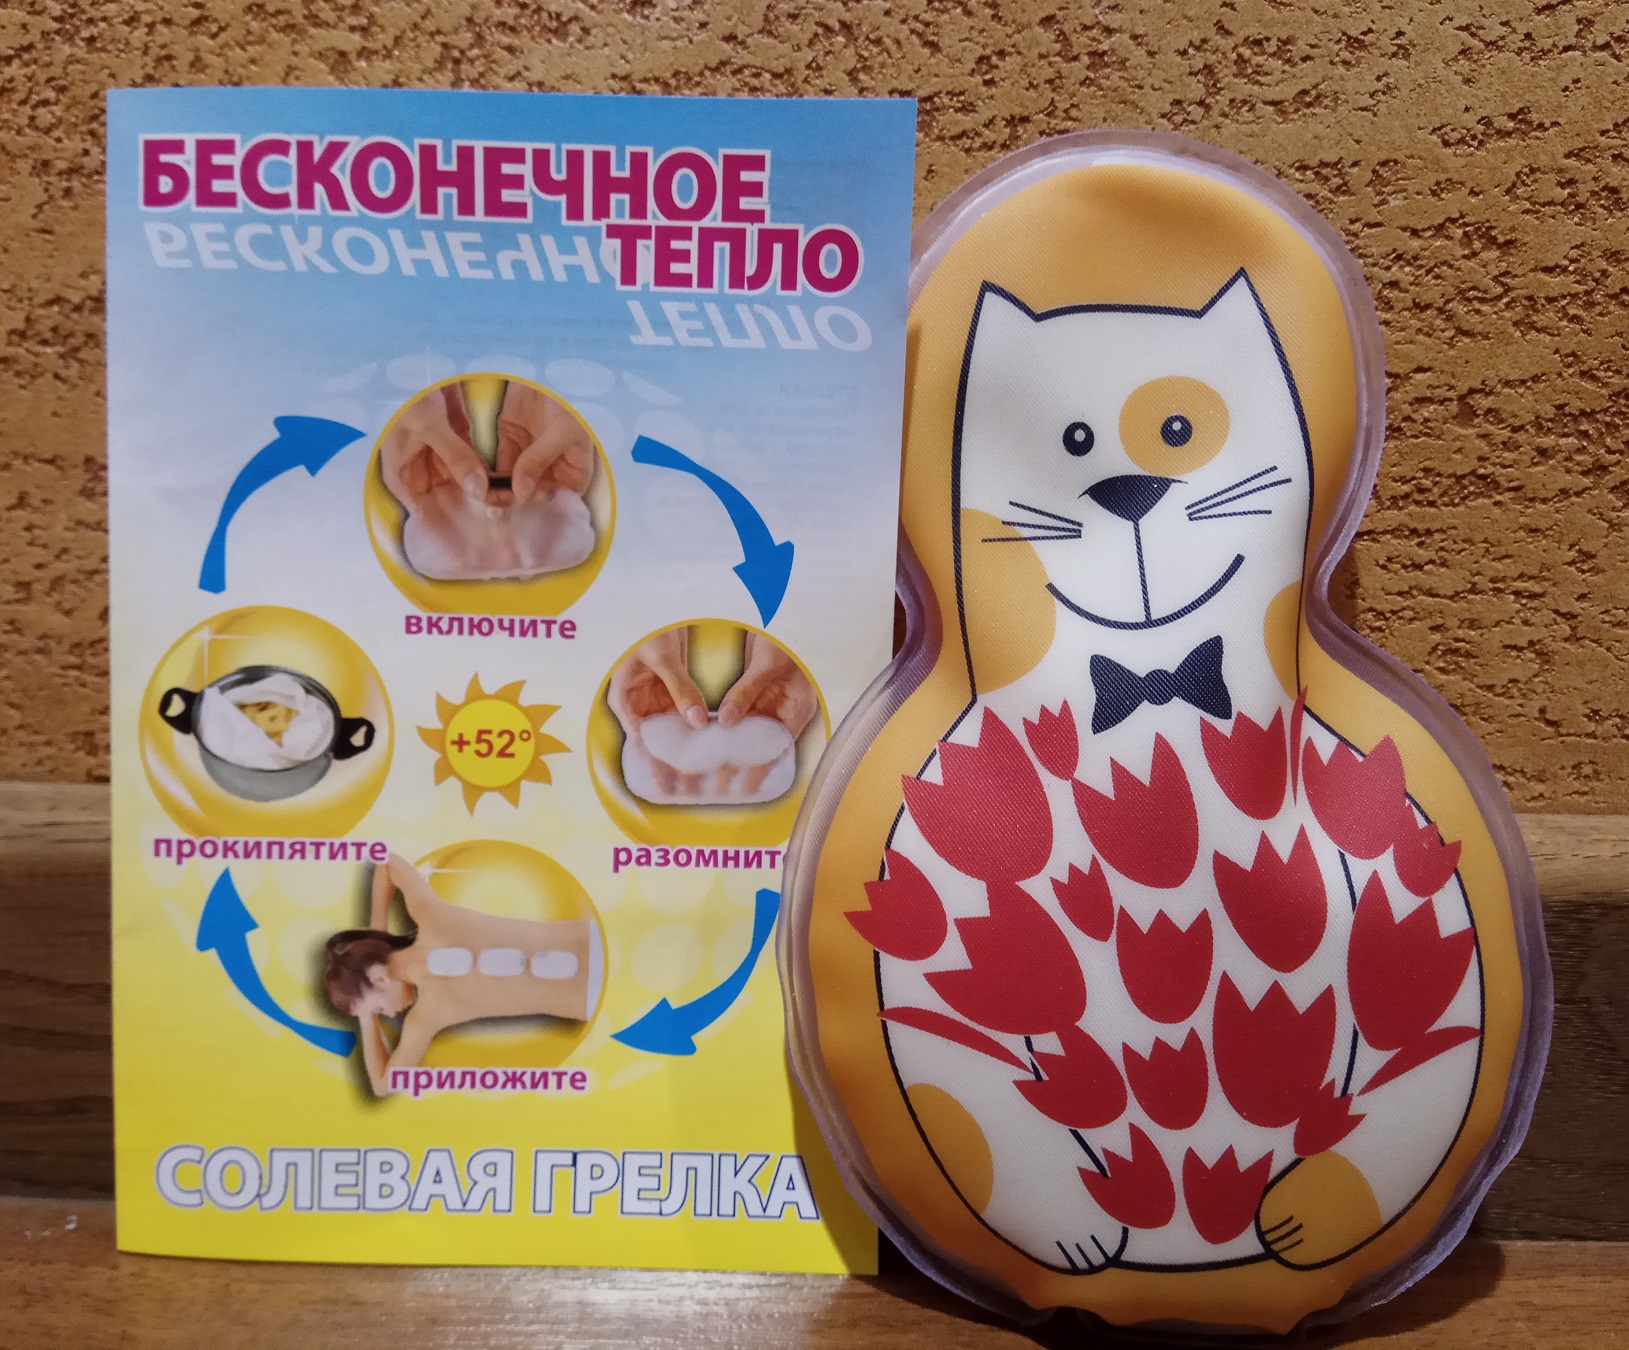 Солевая грелка ДельтаТерм Детская Котик - удобная форма для детей, нежное тепло до +52 градусов